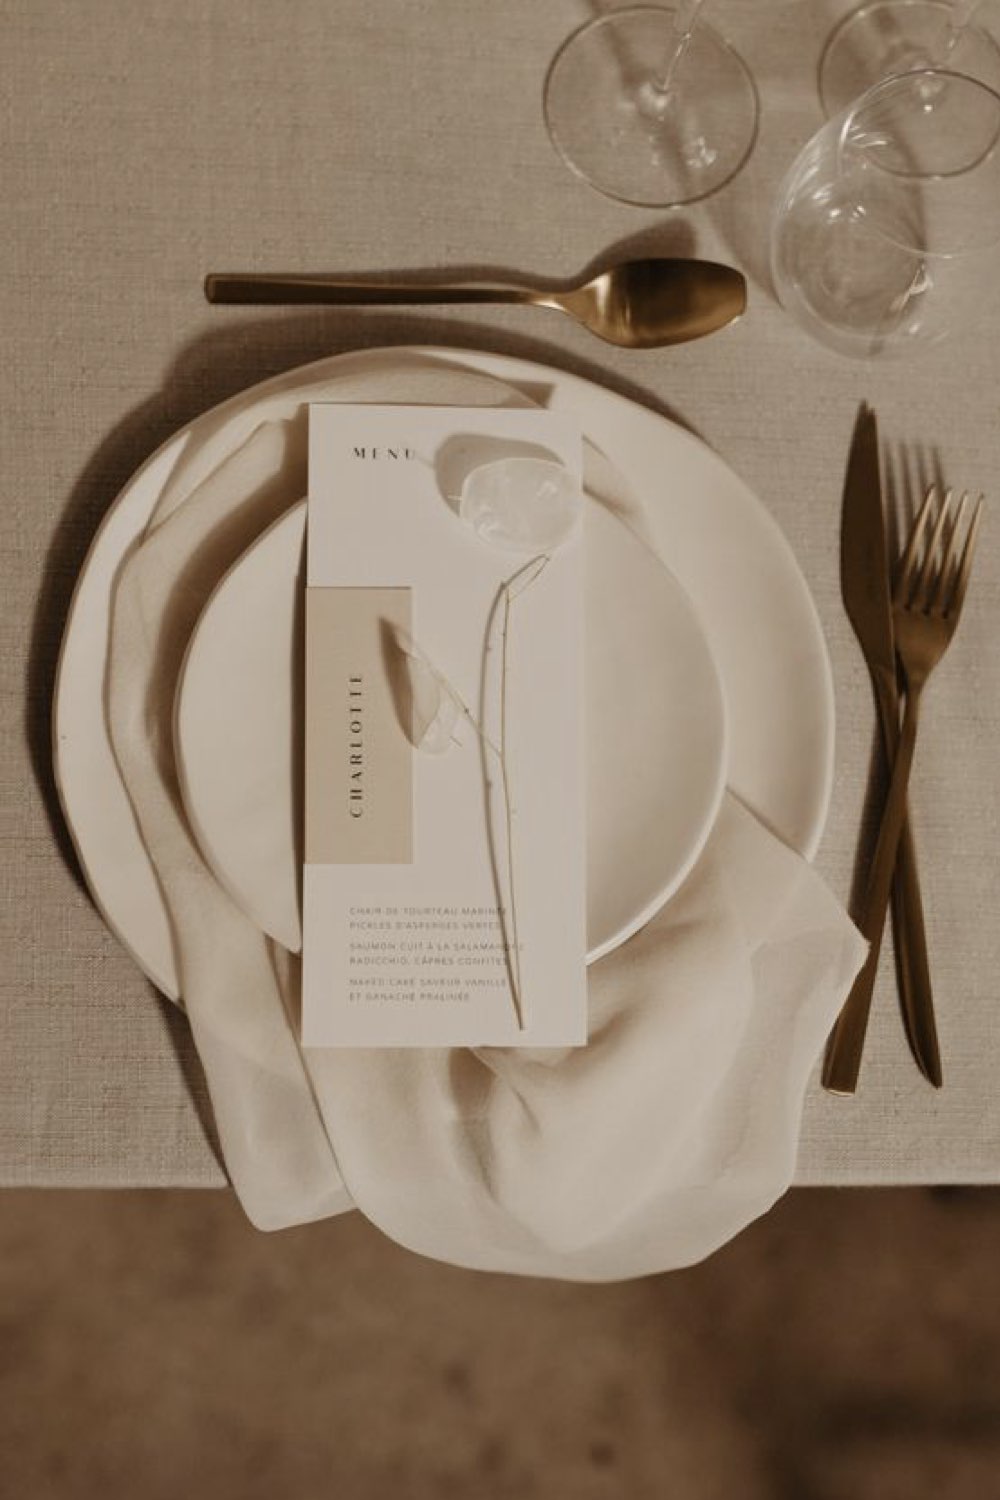 decoration mariage simple minimal chic couleur neutre table art de la vaisselle assiette menu couverts dorés serviette en tissu